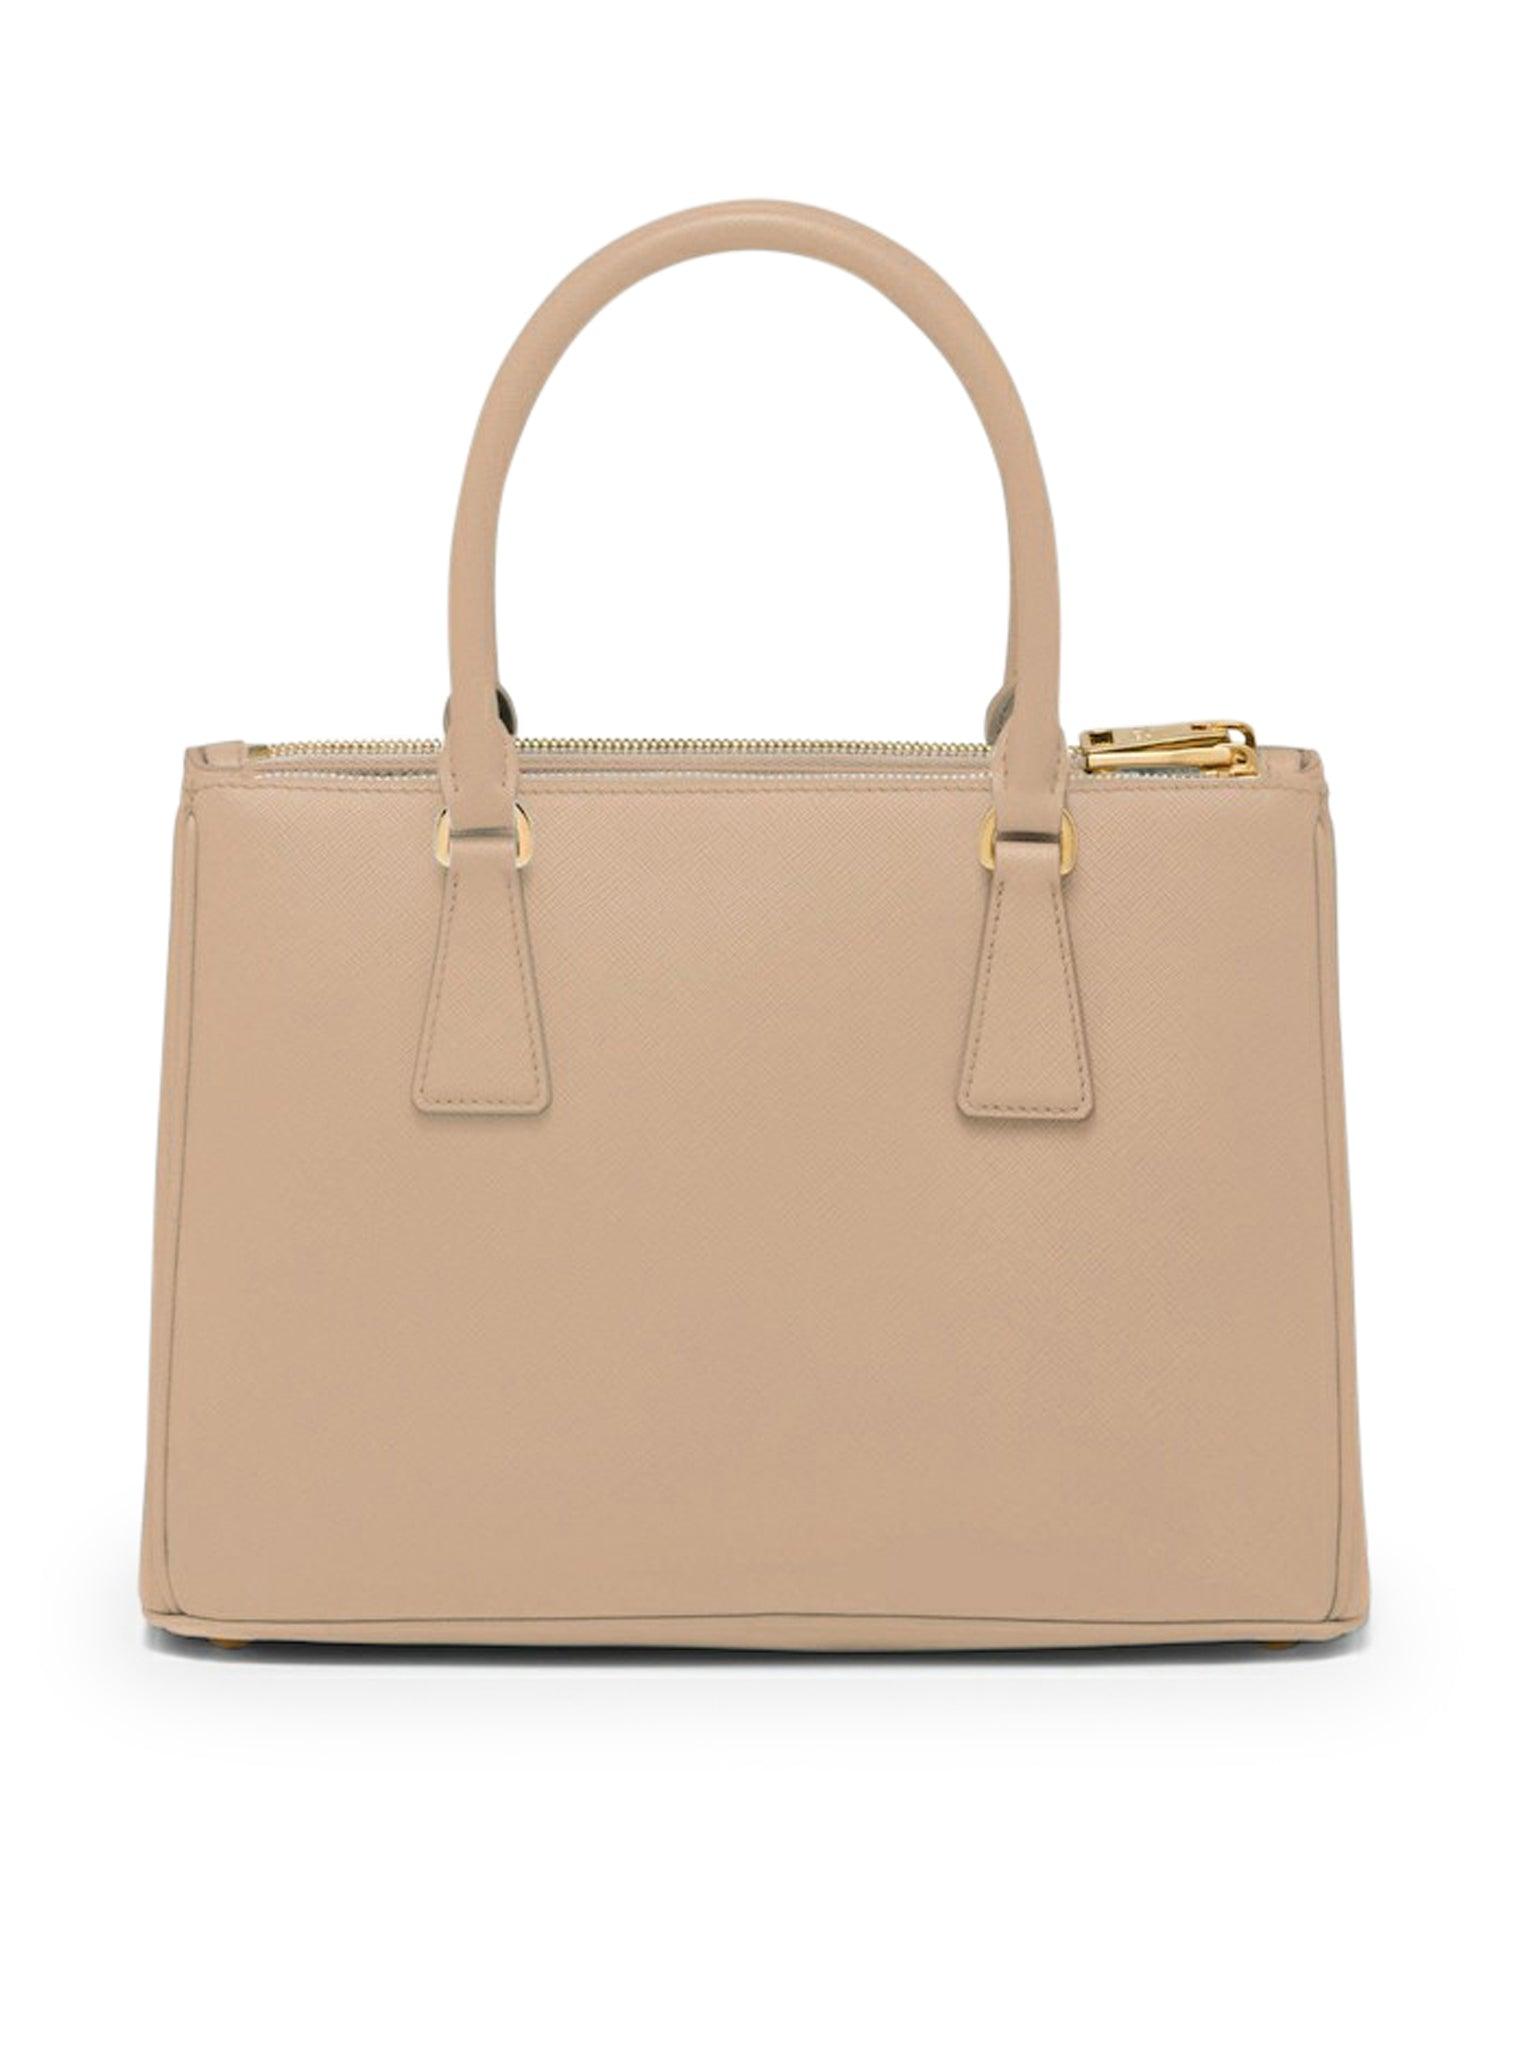 Prada Galleria Medium Bag In Saffiano Leather in Natural